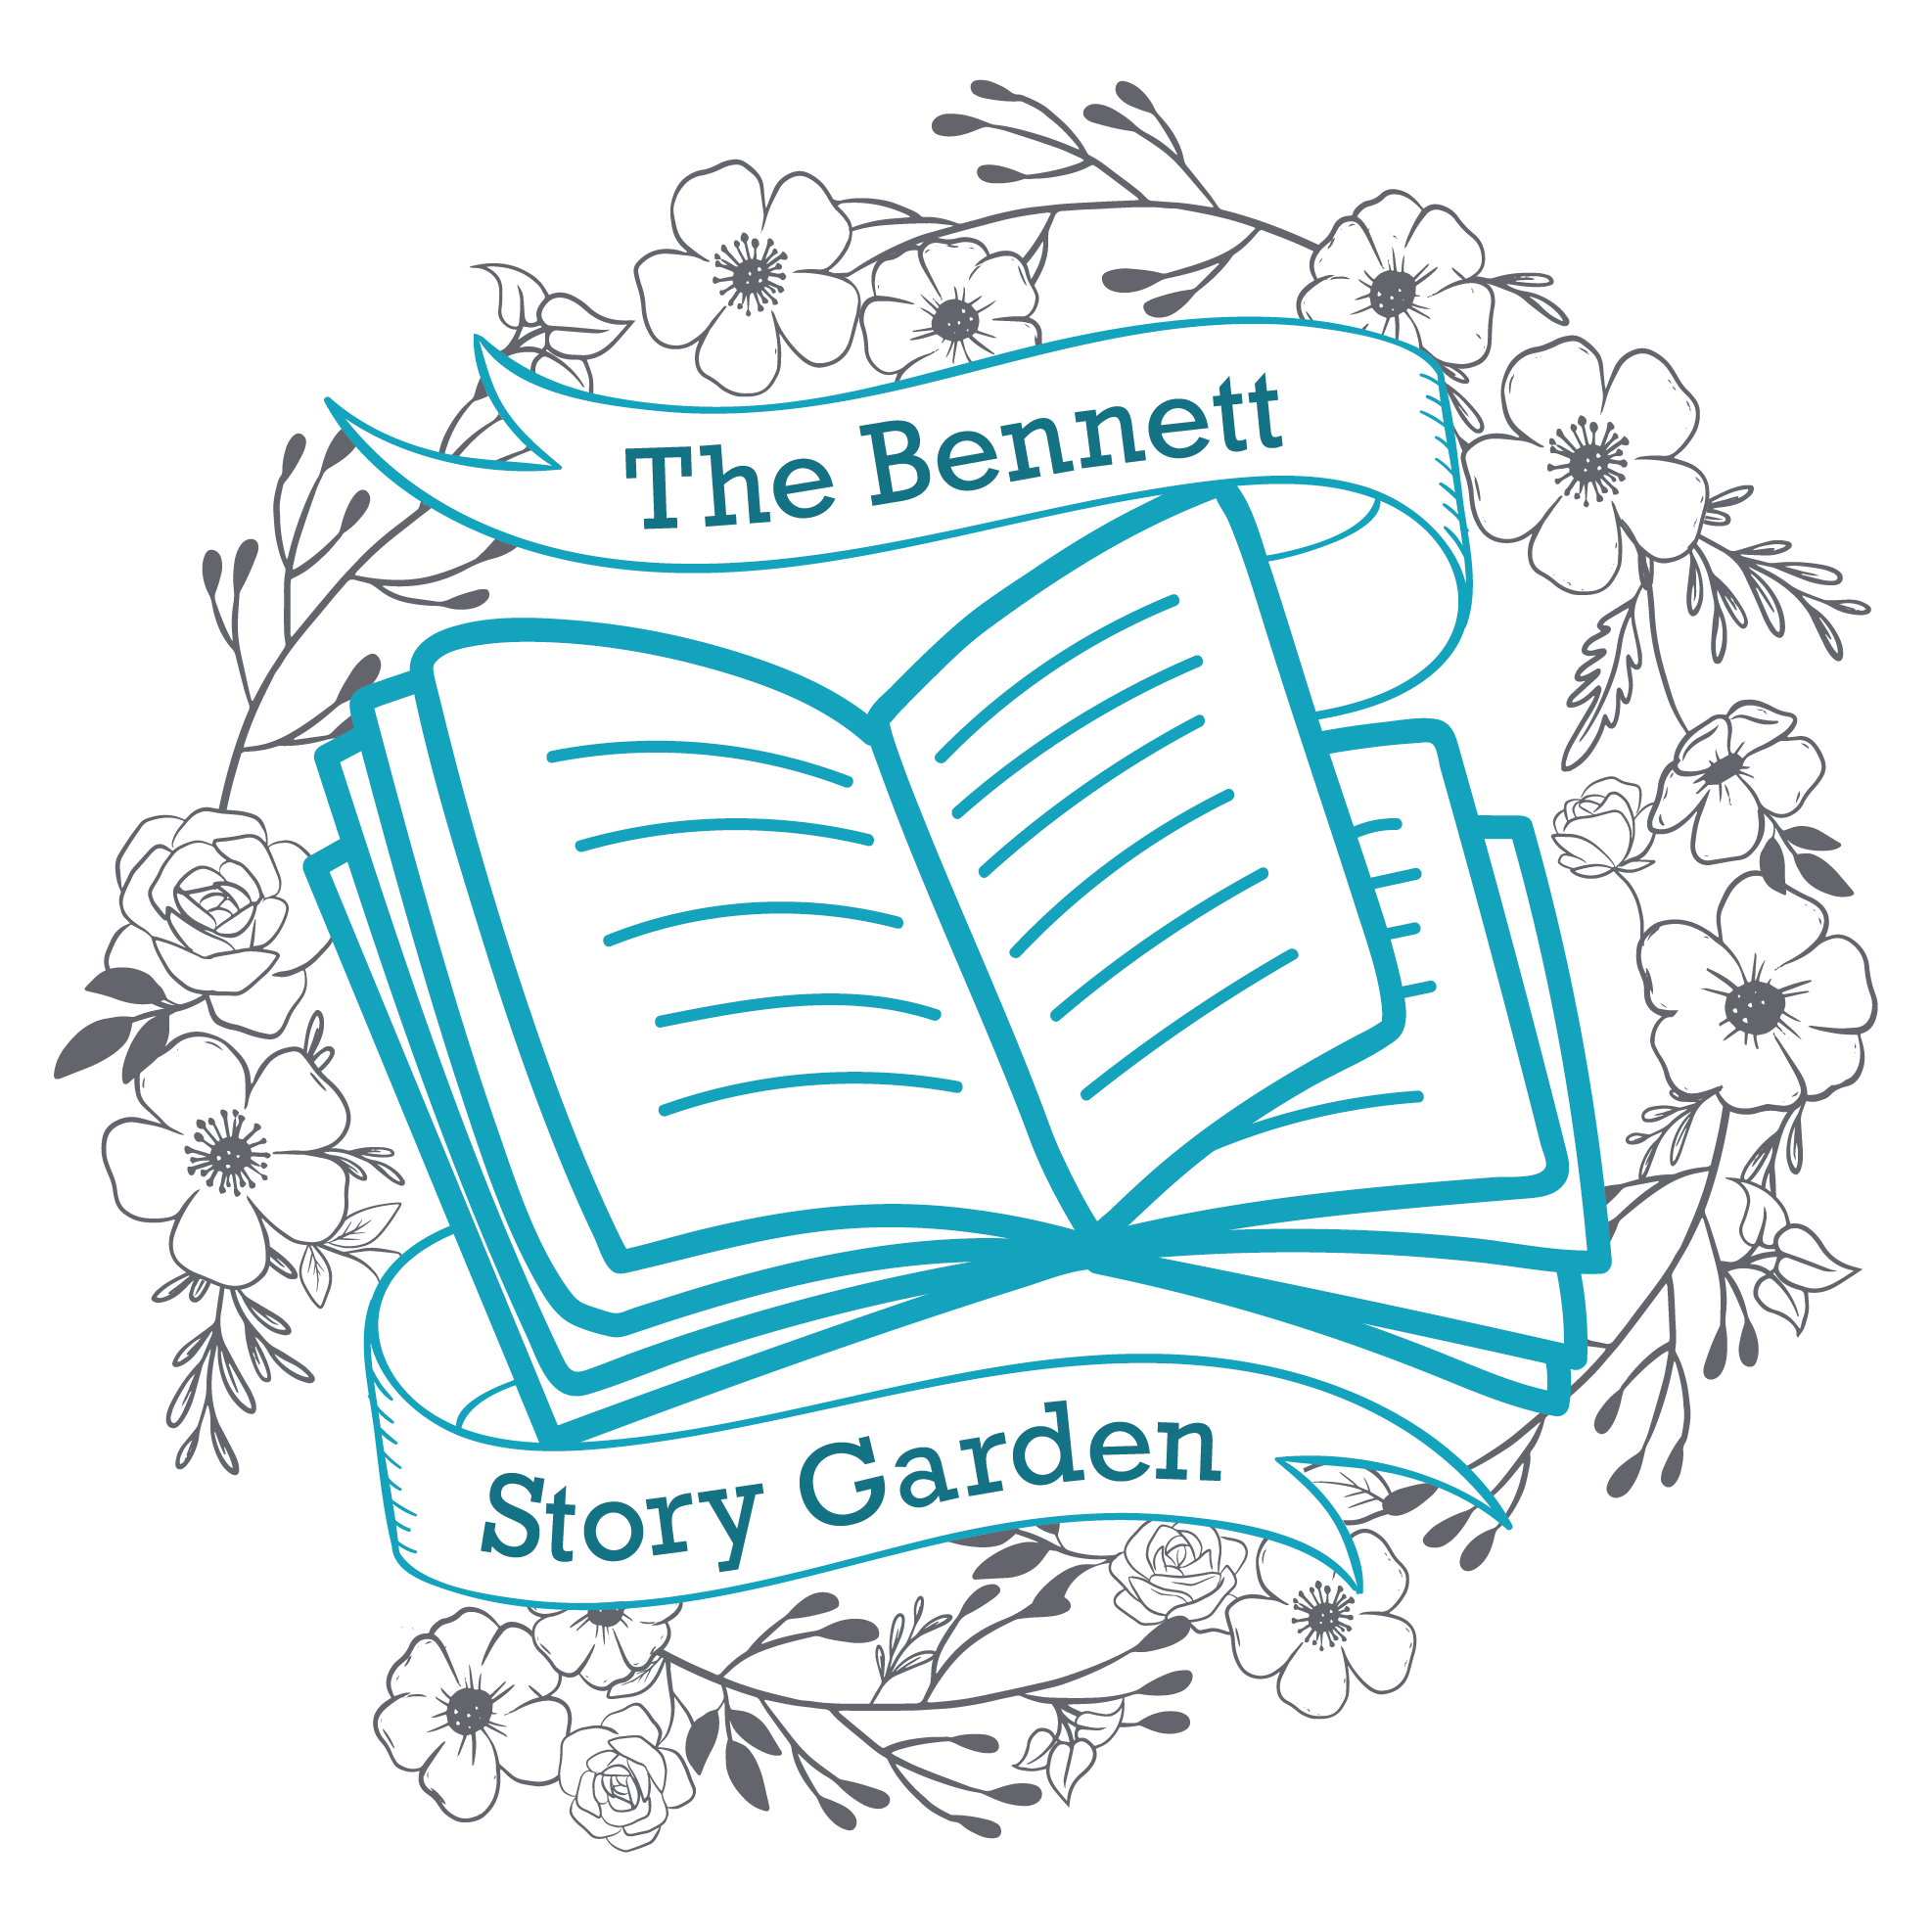 The Bennett Story Garden